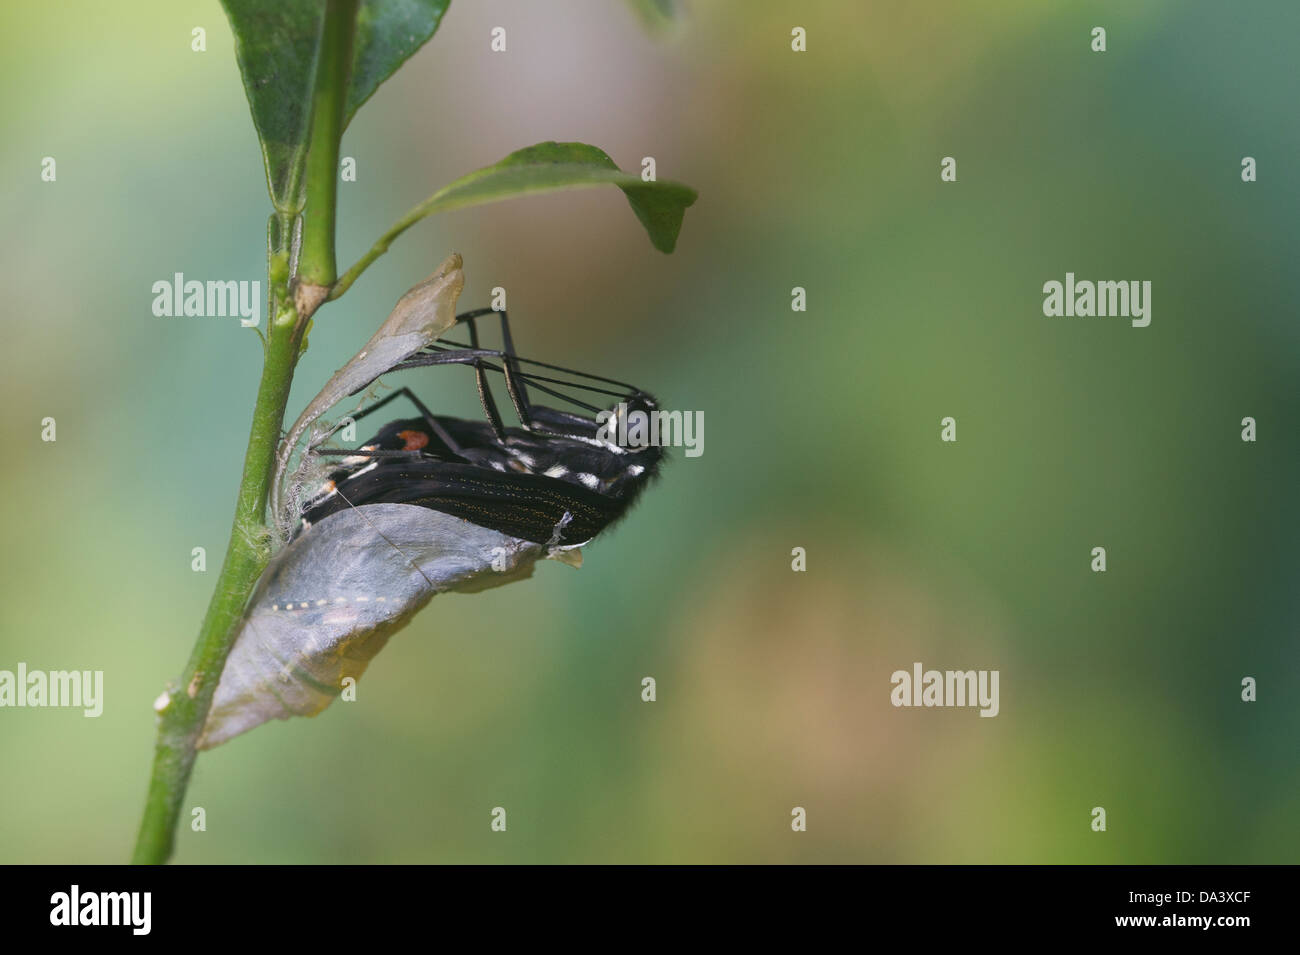 Aparición de Papilio polytes Mormón común. Foto de stock